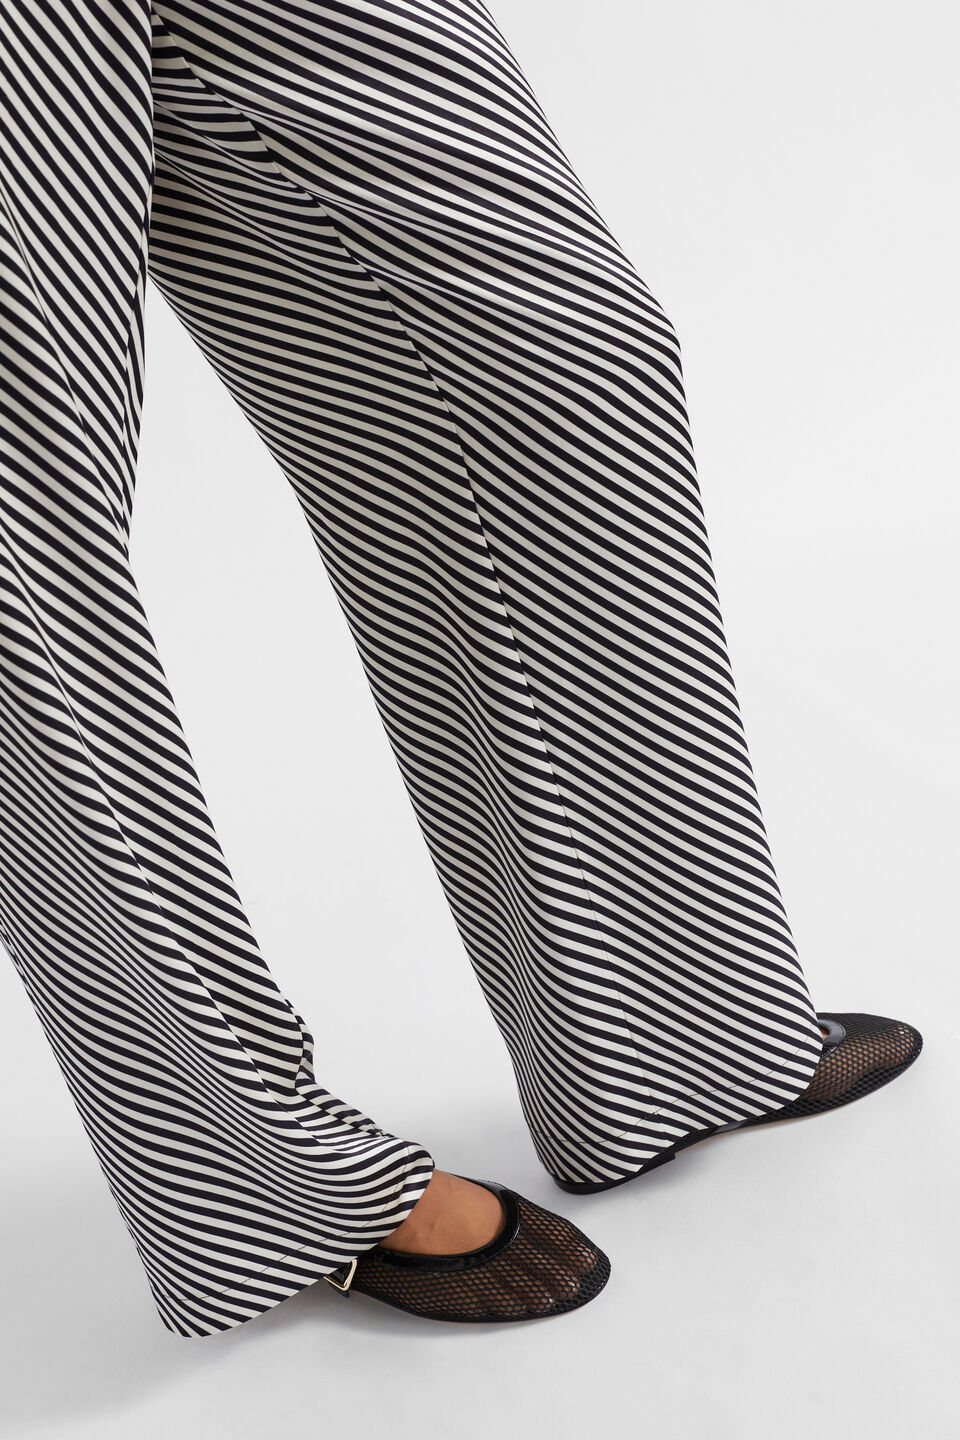 Diagonal Stripe Pant  Black Stripe